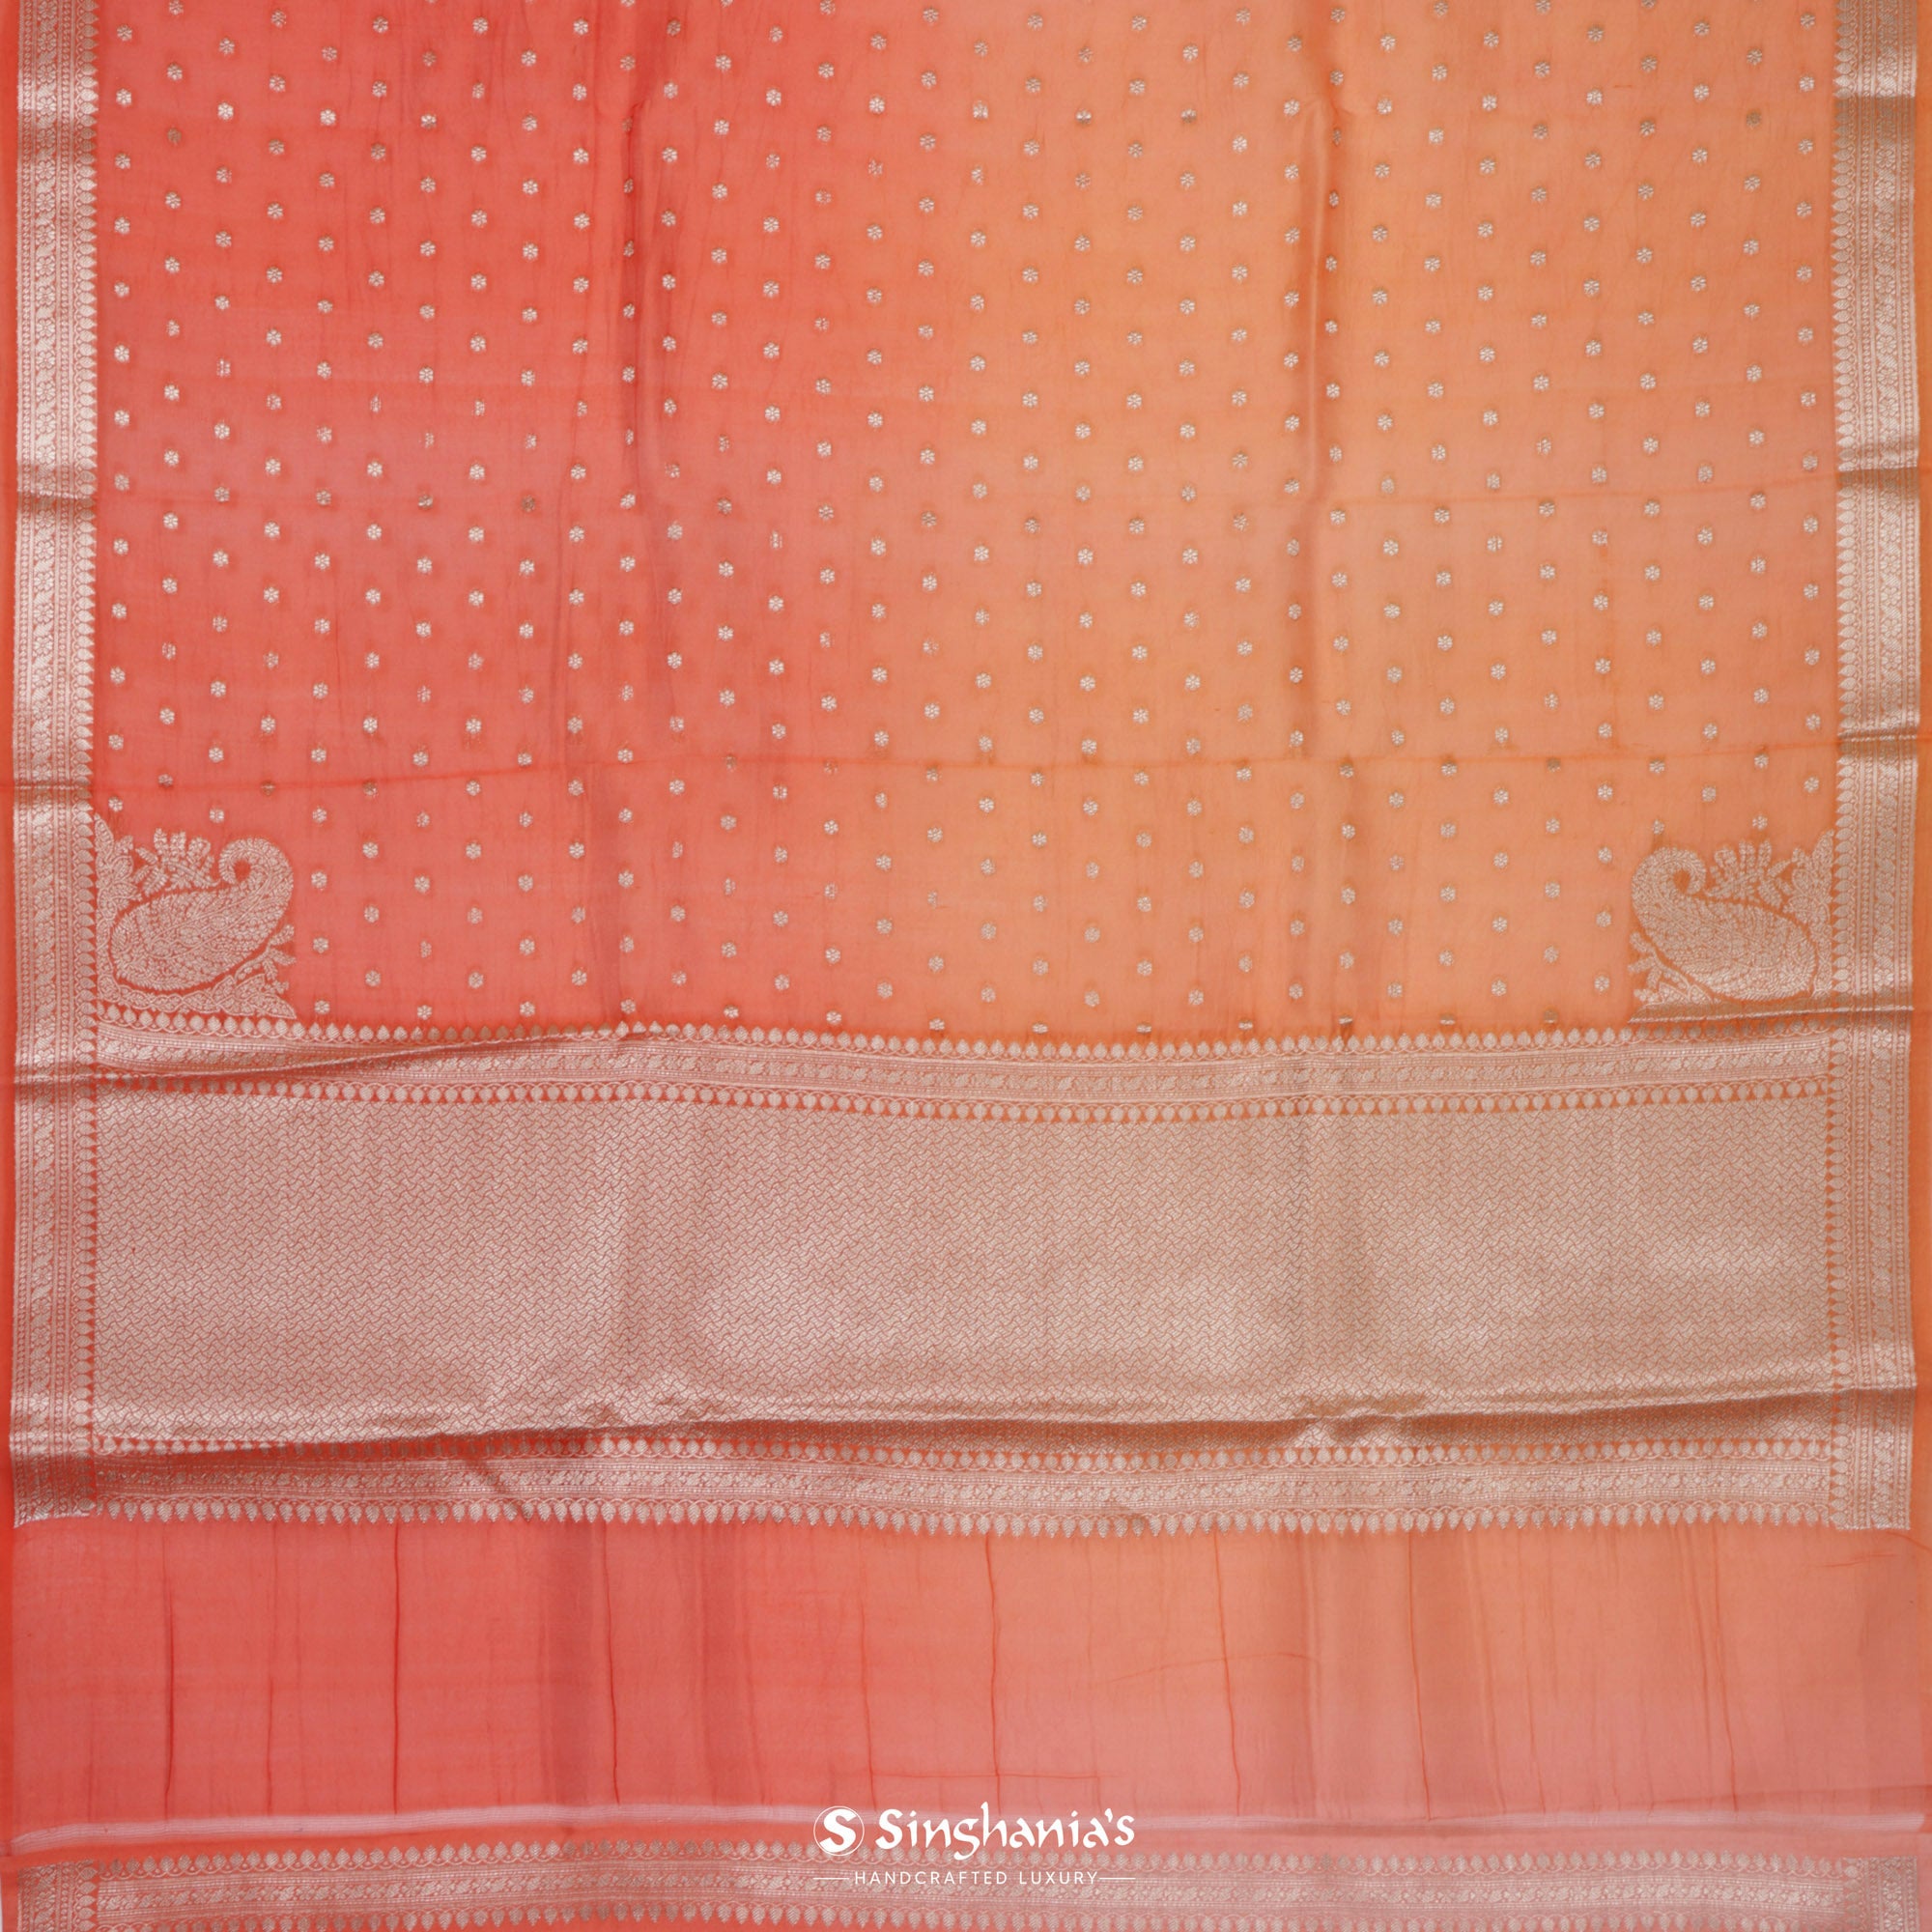 Metallic Orange Organza Saree With Banarasi Weaving